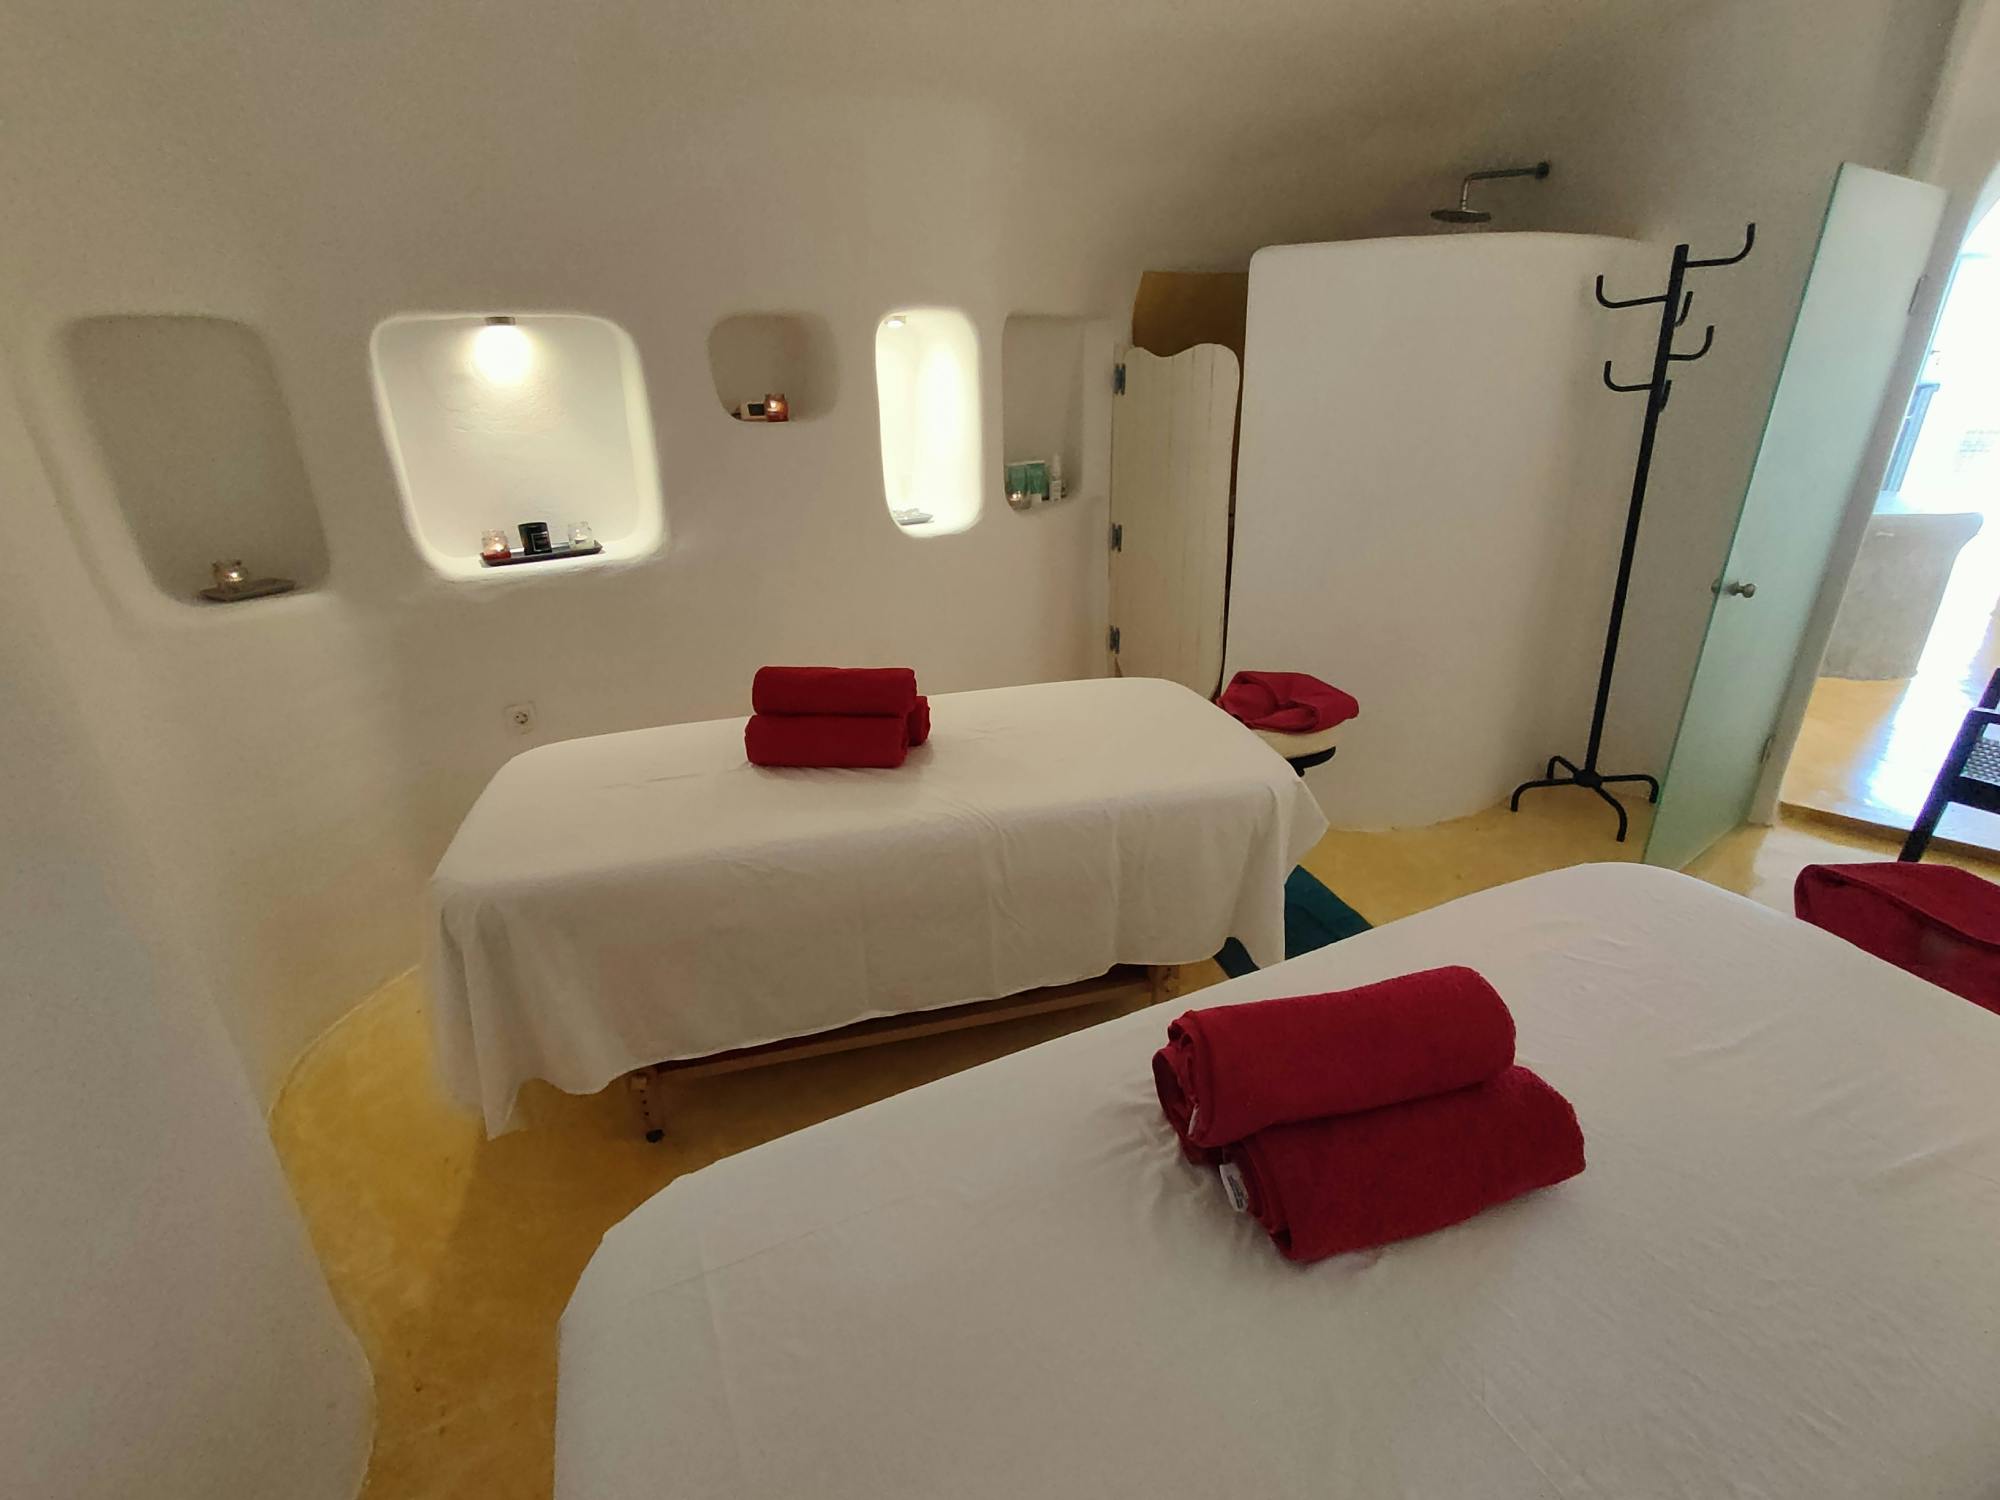 Romantische Aromatherapie für Paare in einem Cave Winery Spa auf Santorini